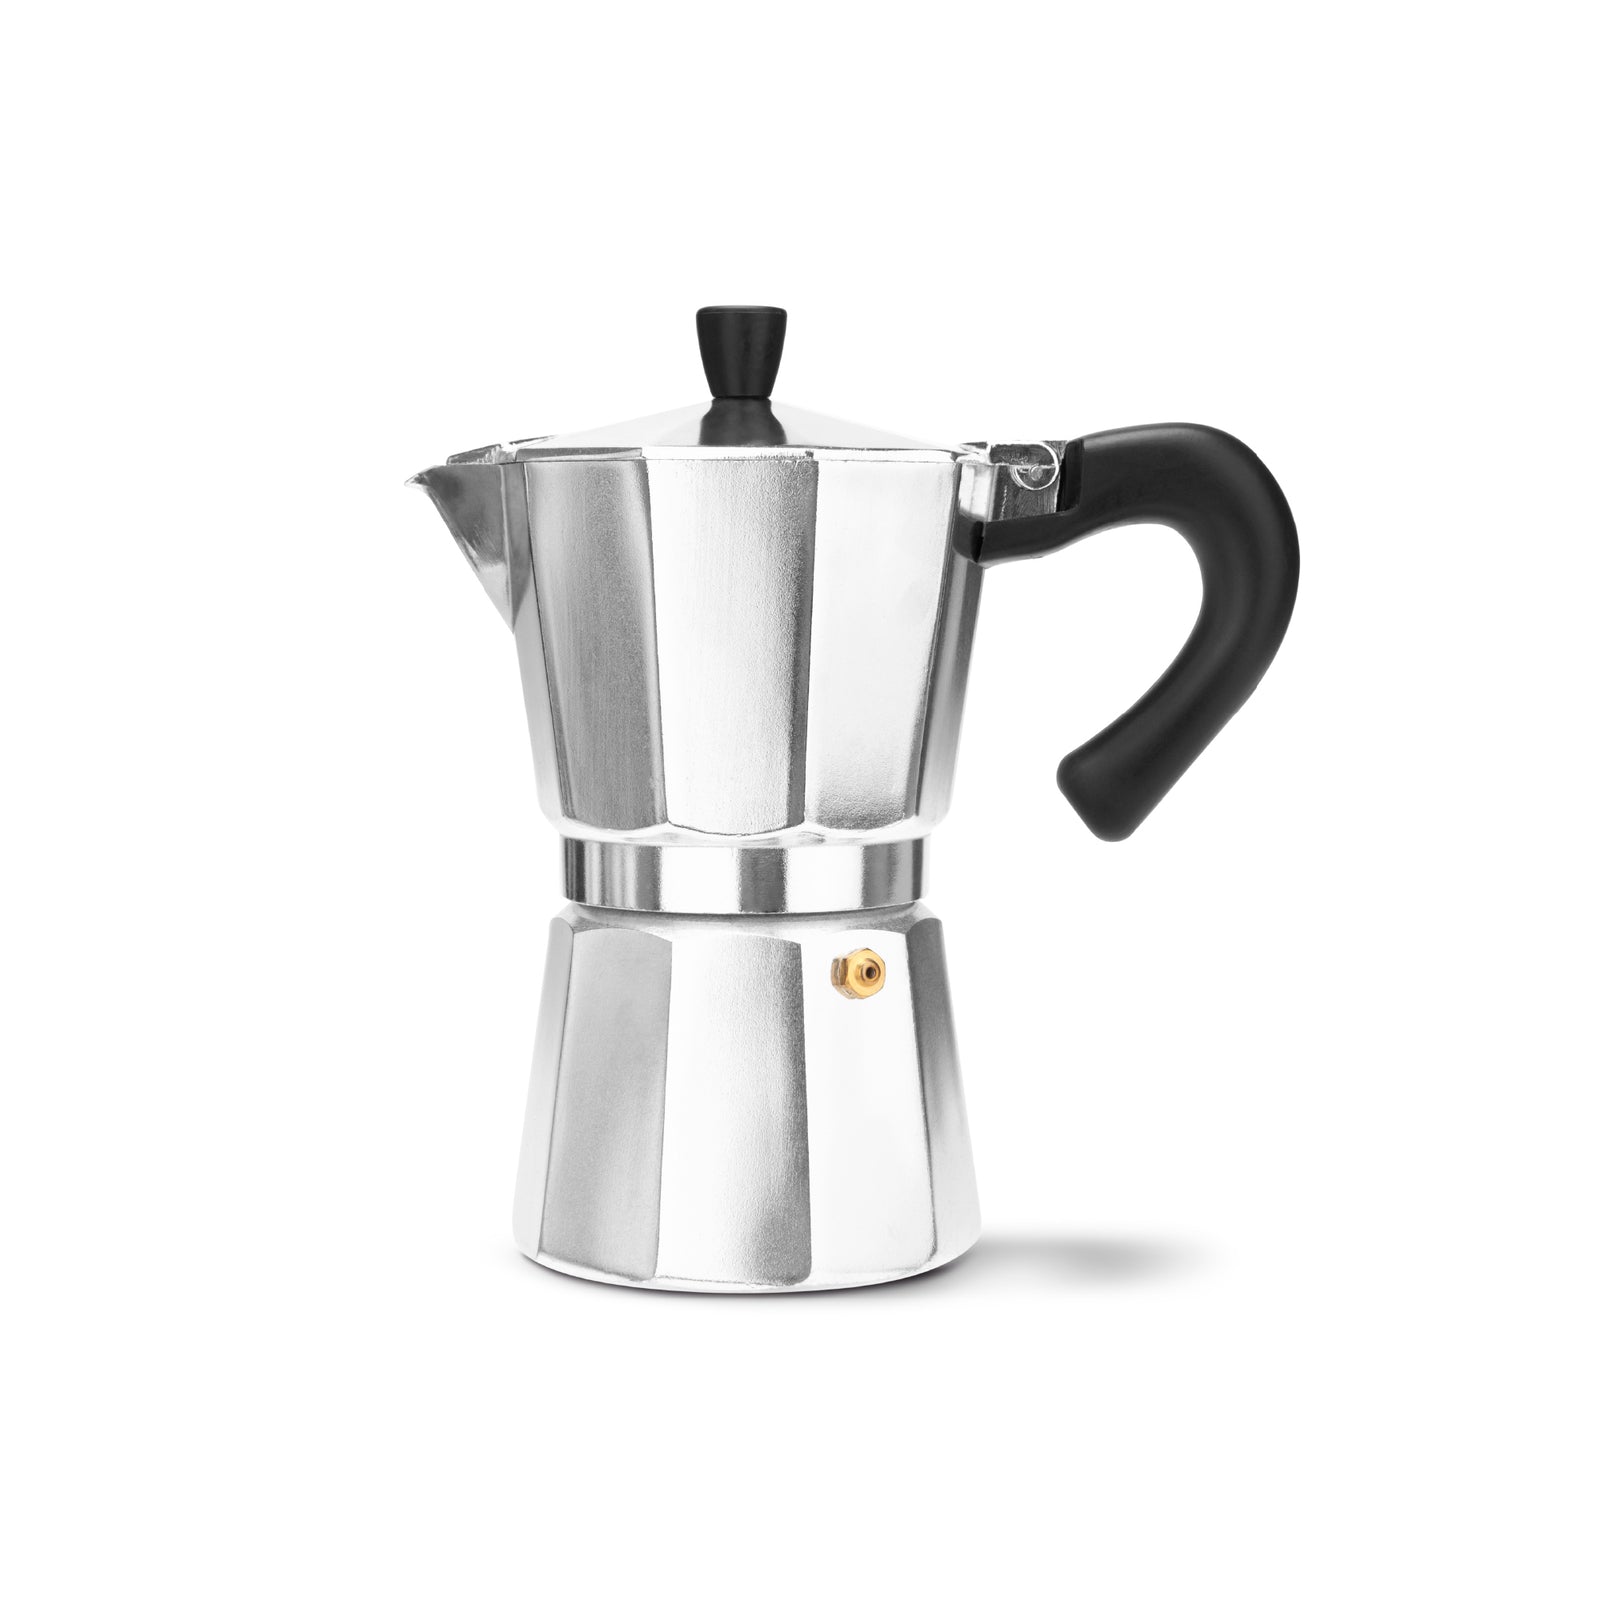 https://espresso-works.com/cdn/shop/products/espressoworks-six-cup-moka-pot-stovetop-espresso-maker_1600x.jpg?v=1604993336